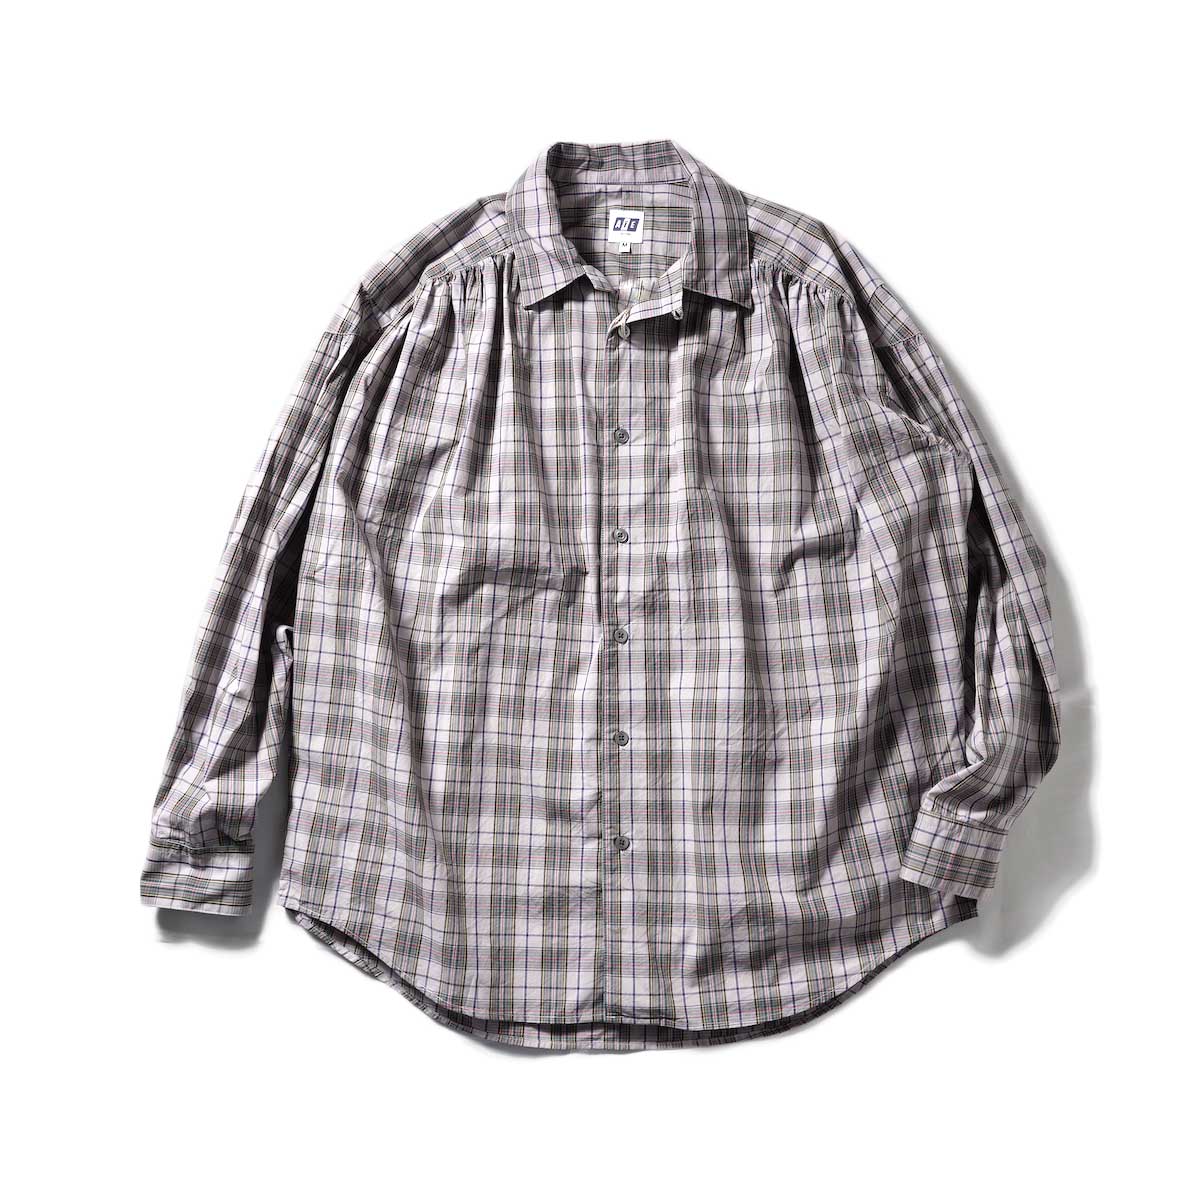 AiE / Painter Shirt-Cotton Tartan Check (Purple / Green)